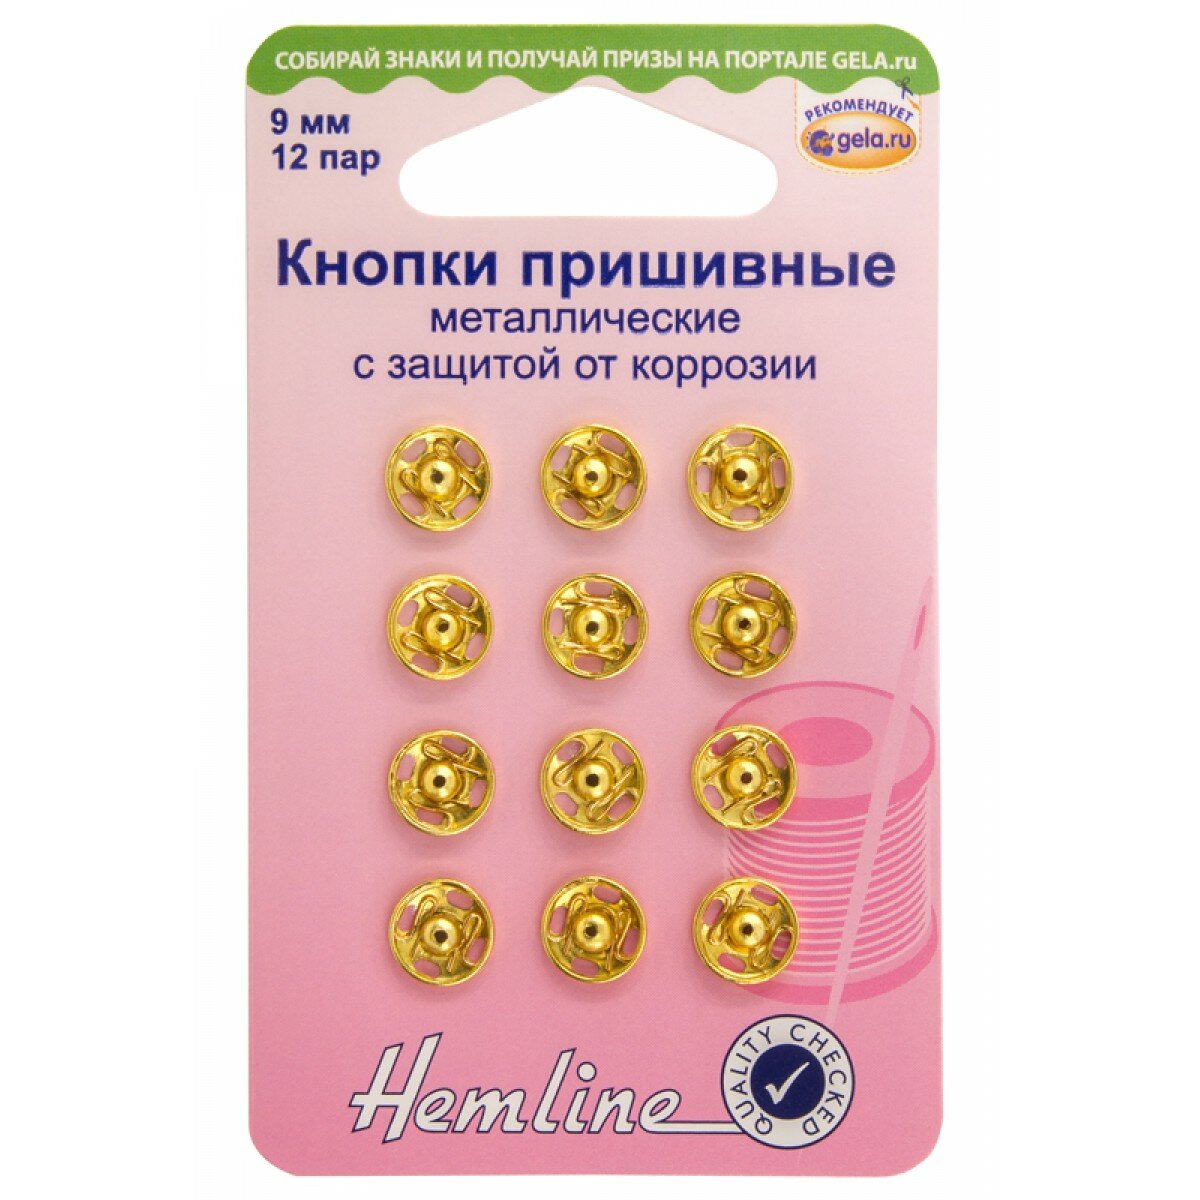 Кнопки пришивные металлические c защитой от коррозии золото 9 мм* HEMLINE 420.9. G